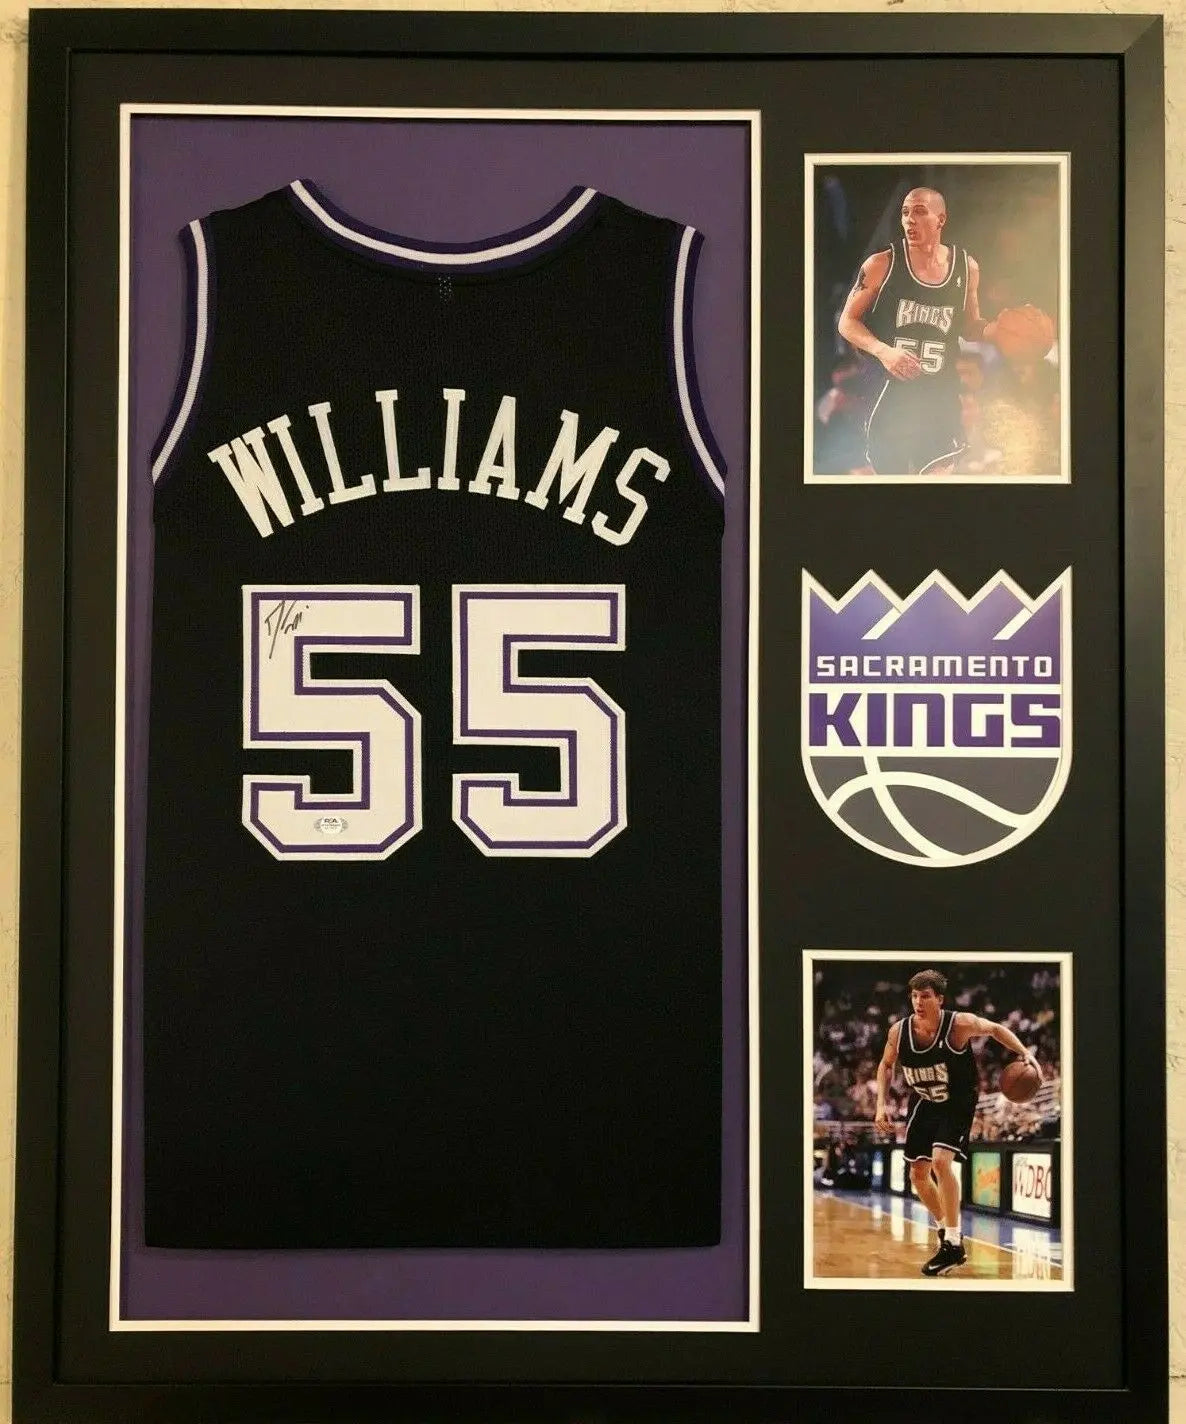 Jason Williams NBA Fan Jerseys for sale